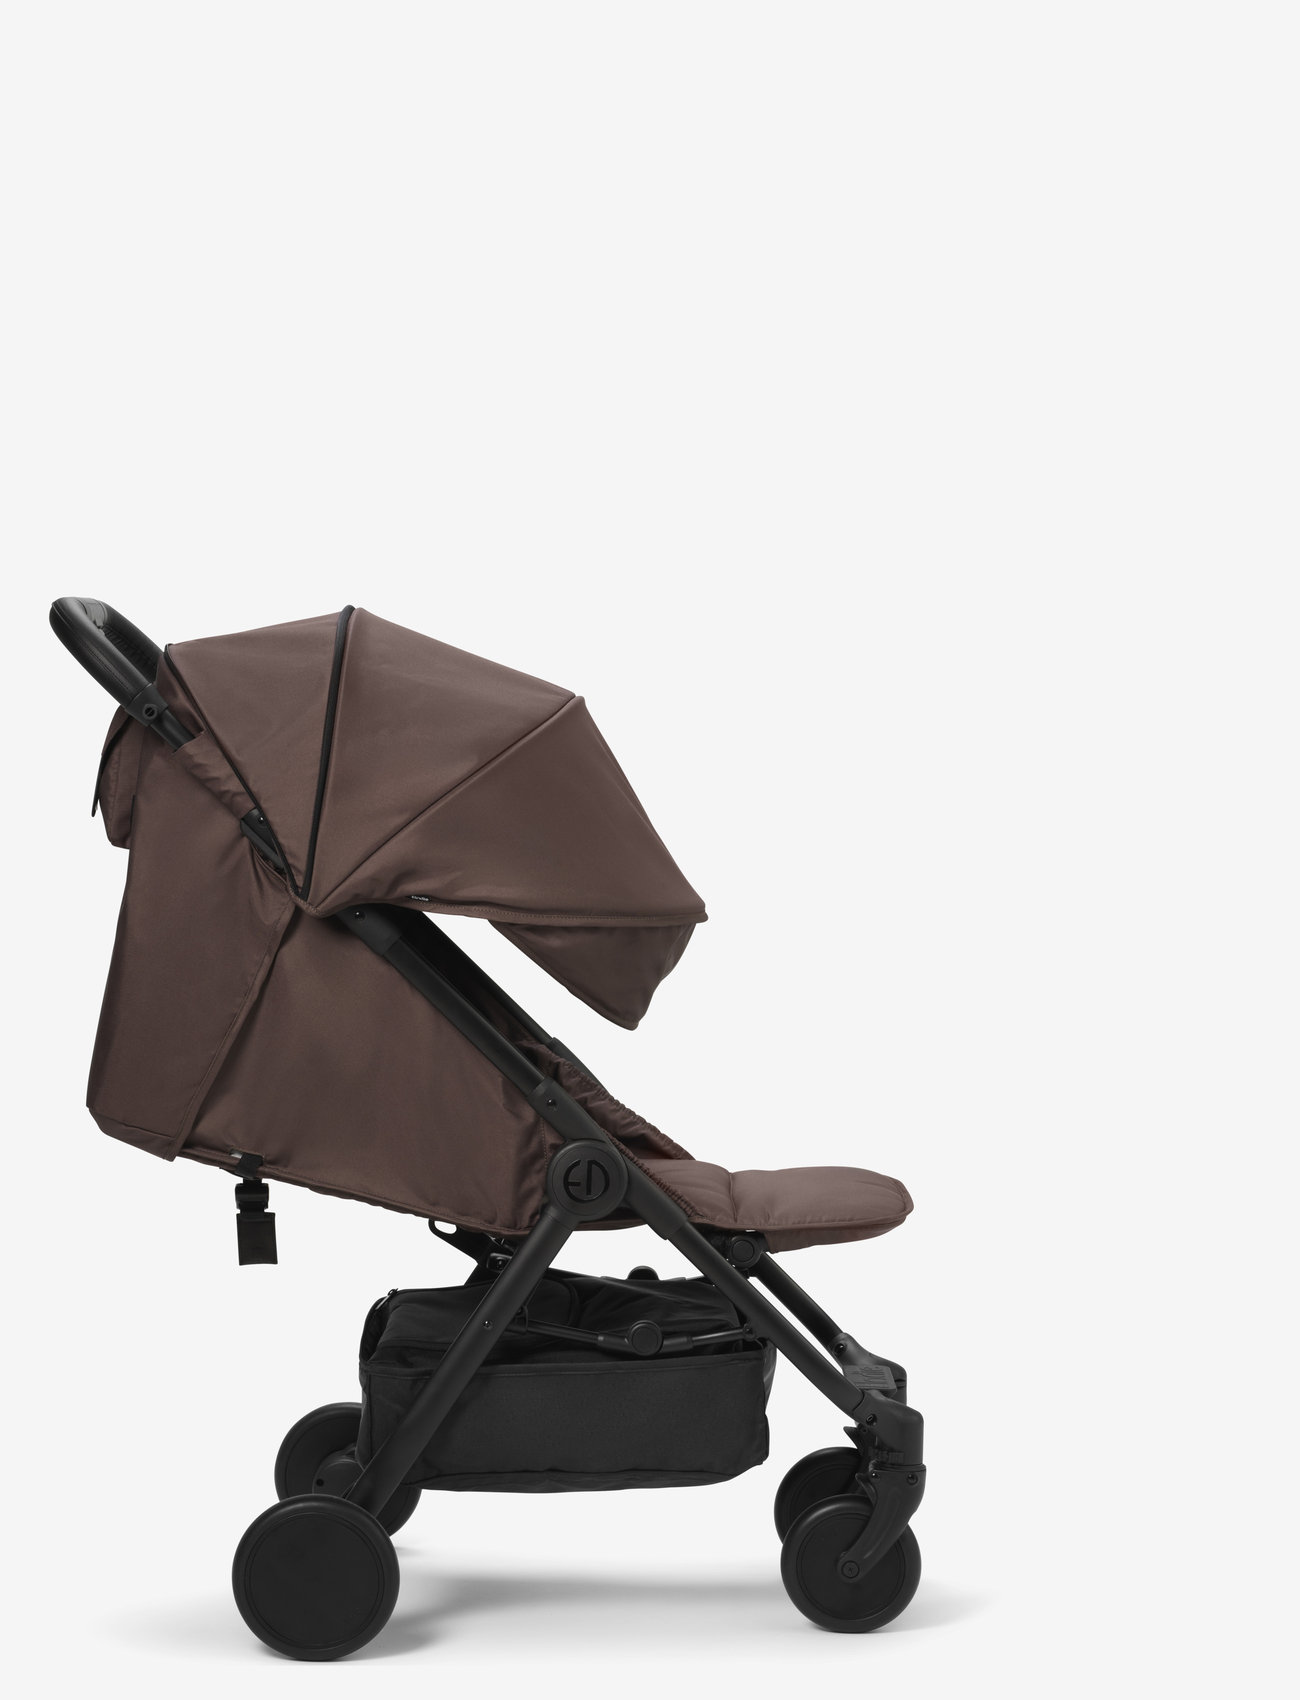 Elodie Details - MONDO Stroller - Chocolate - strollers - brown/black - 1